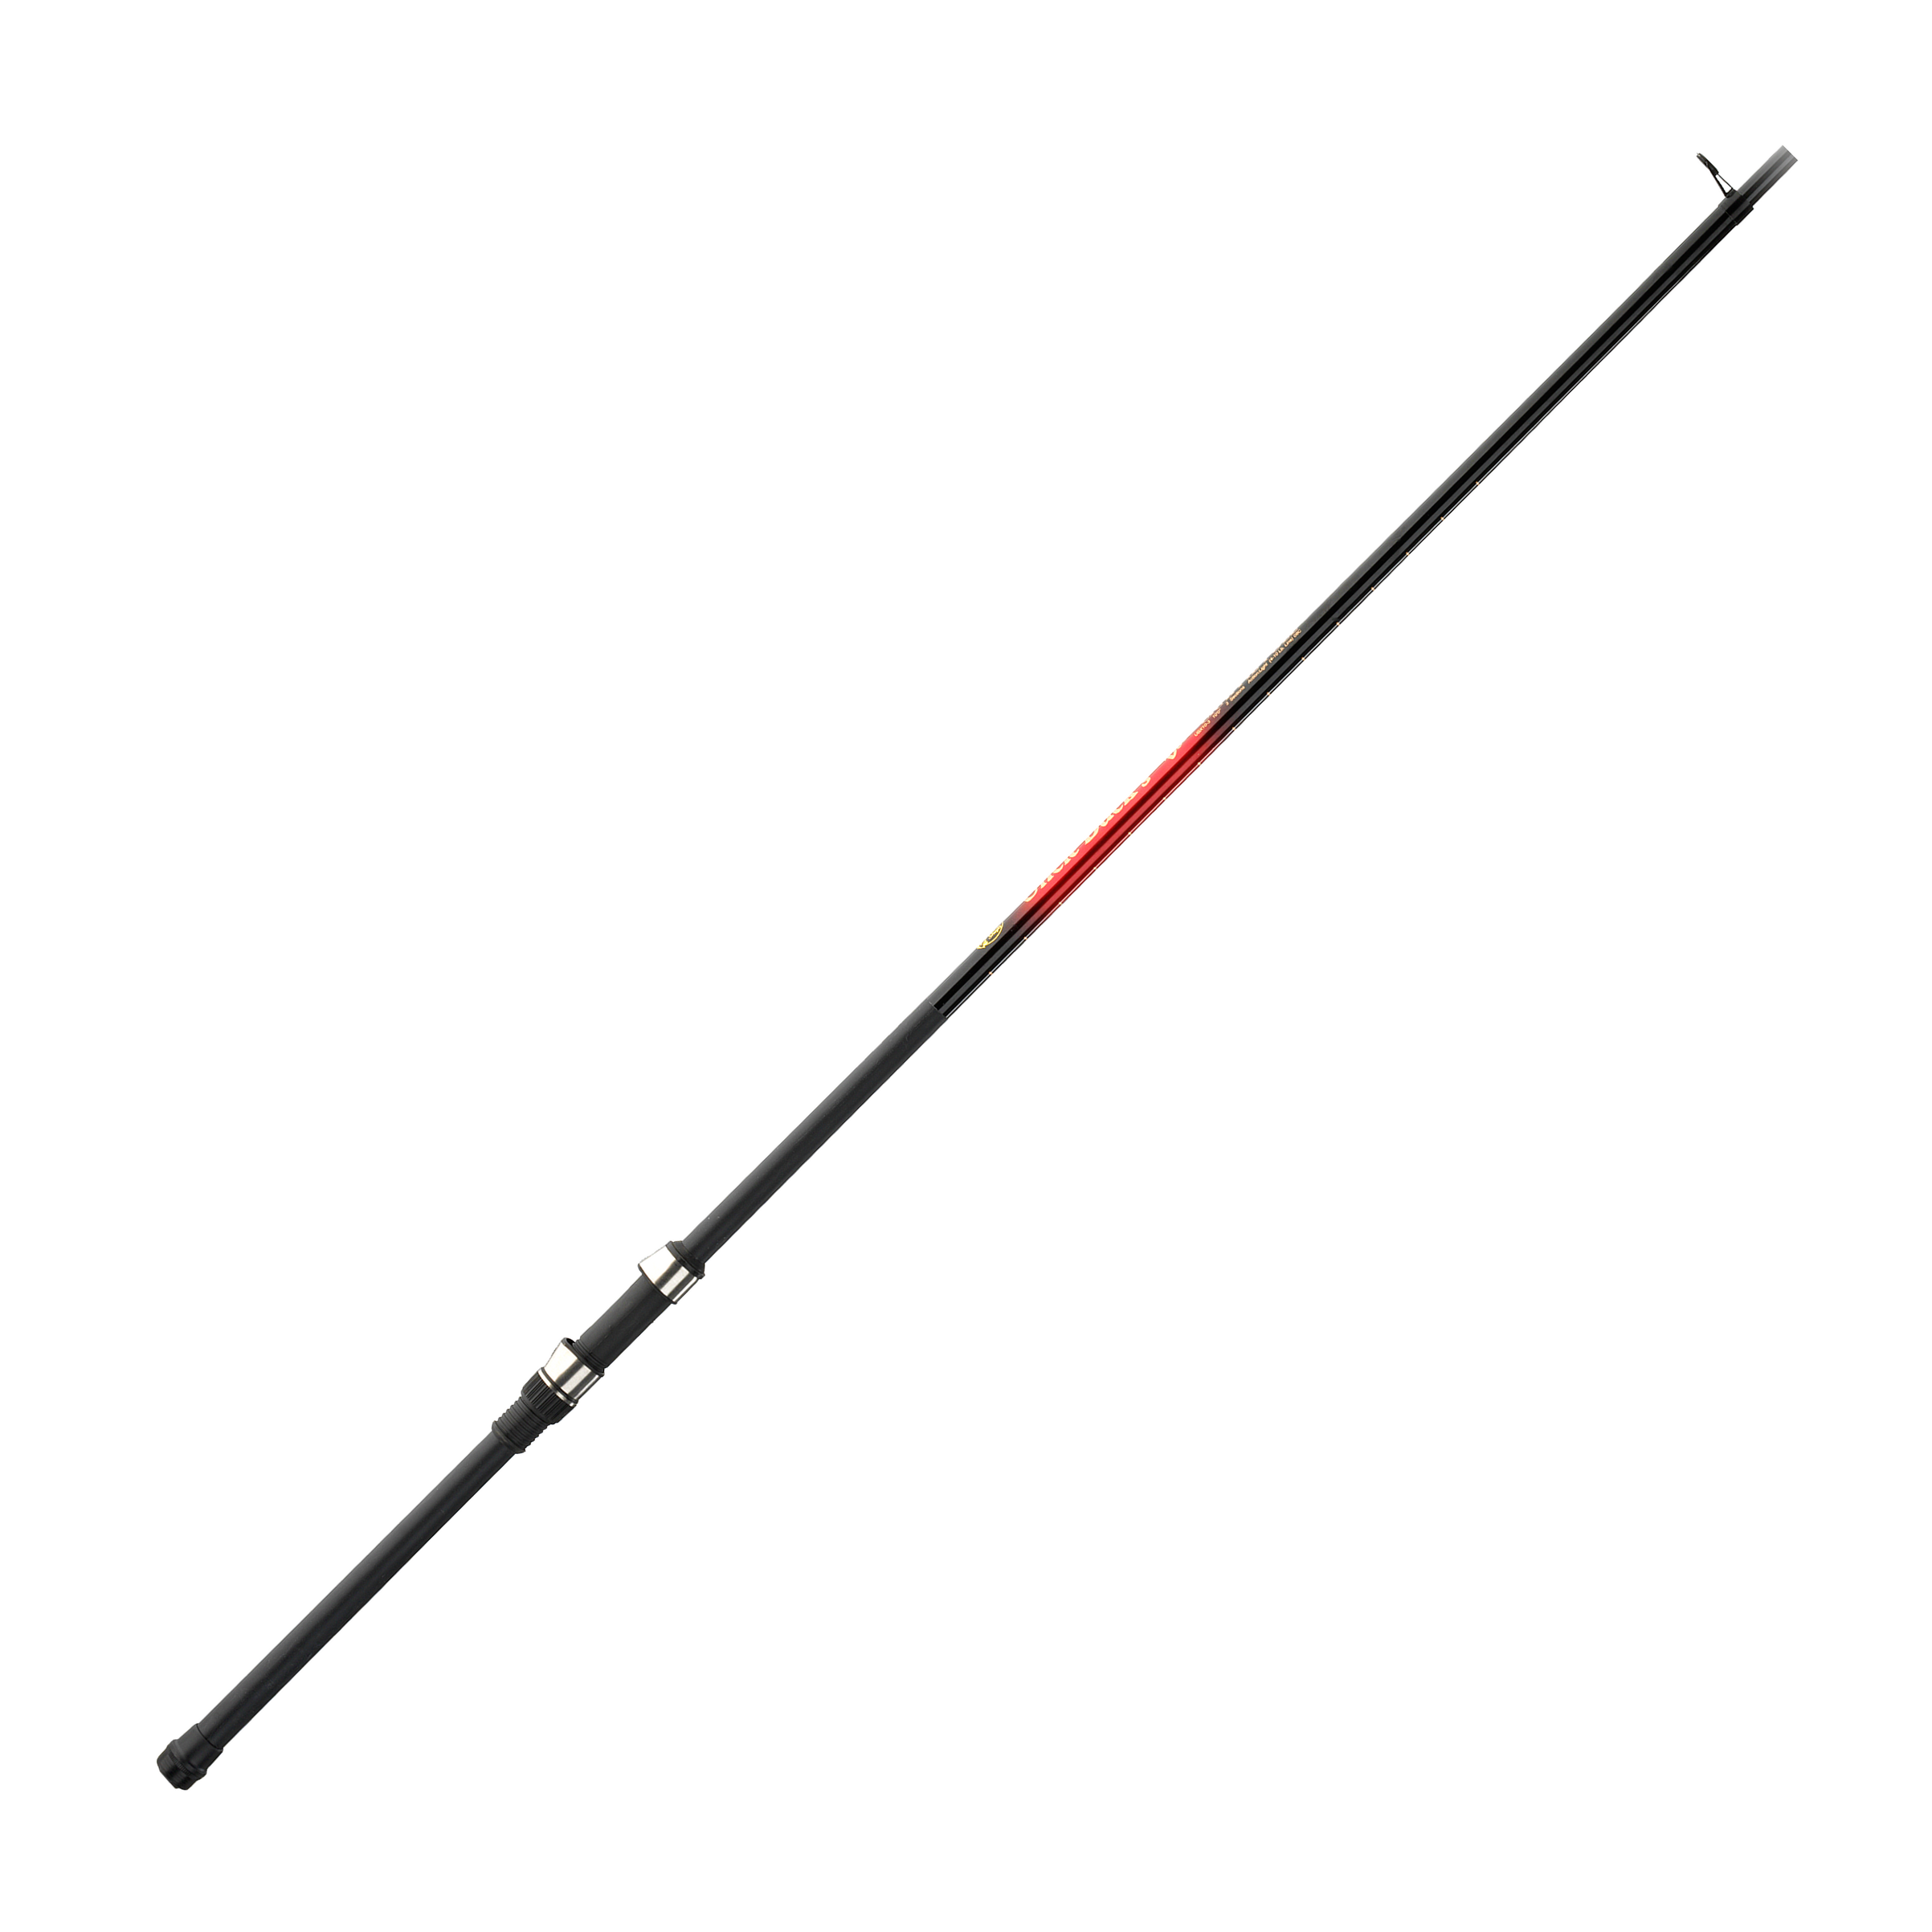 Buck's Best Ultra-Lite Pole - B'n'M Pole Company